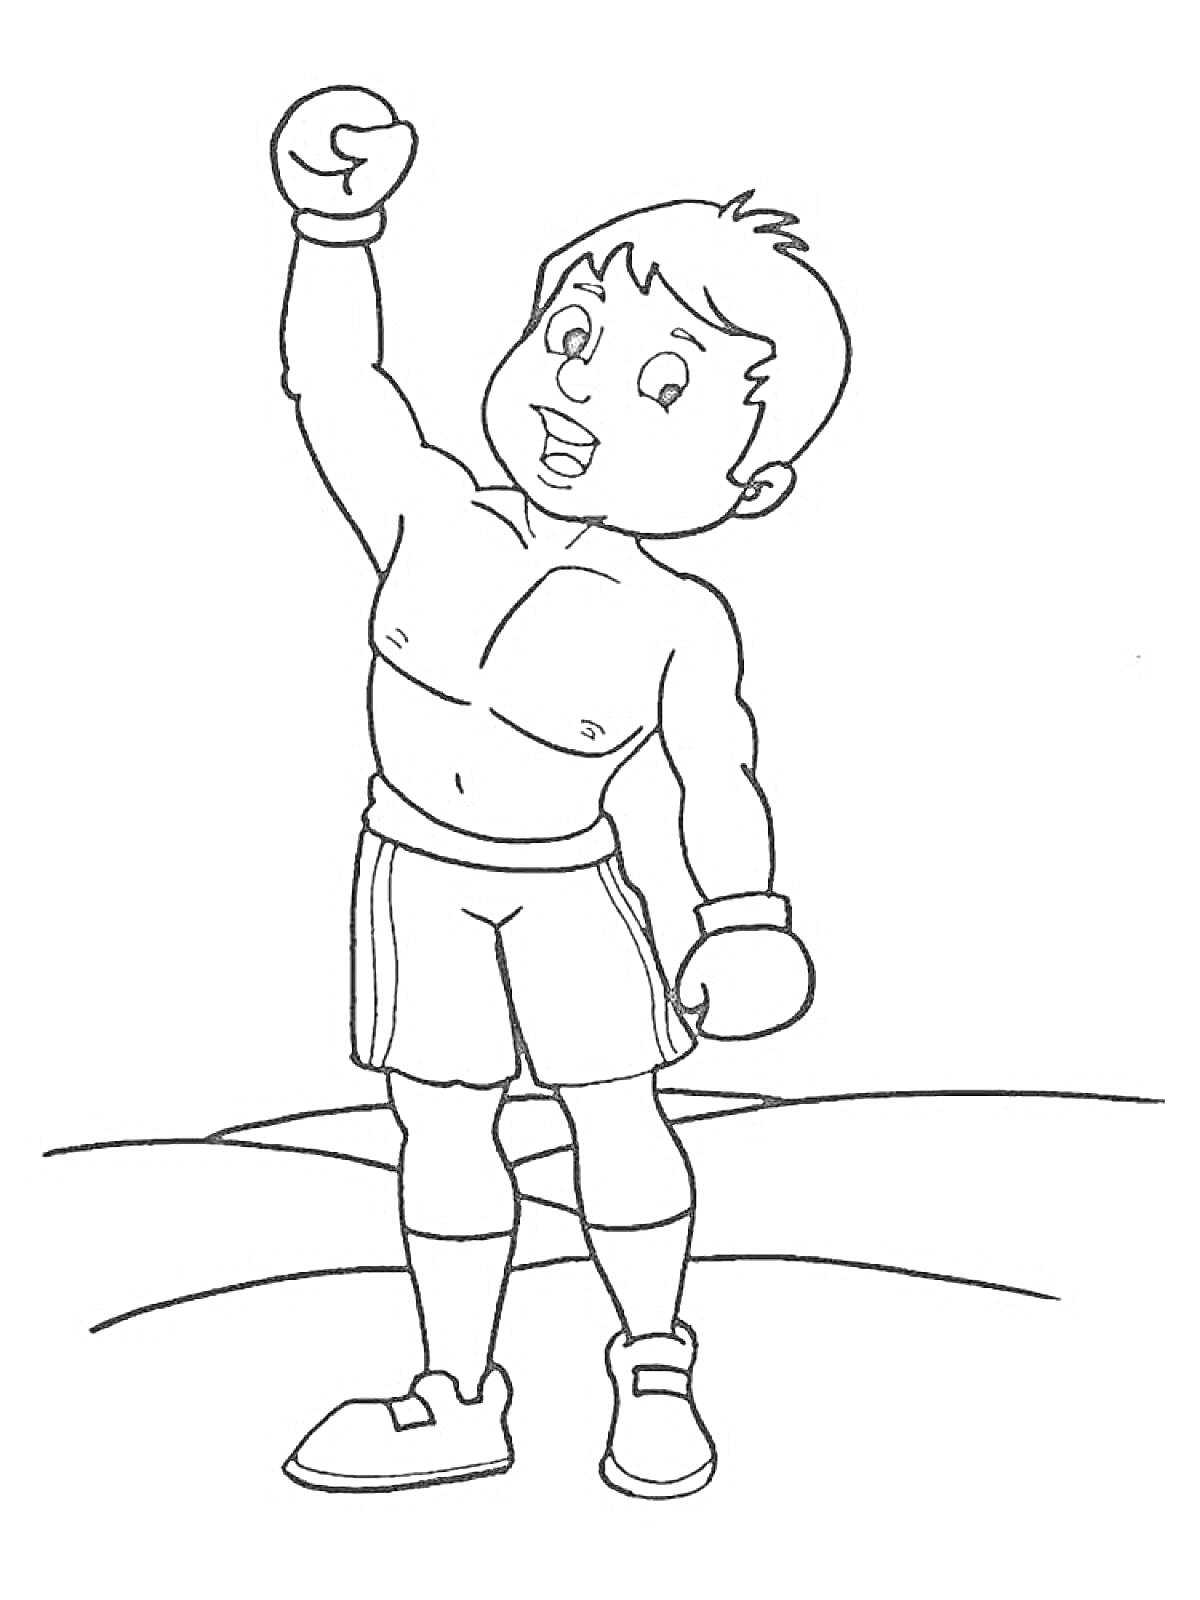 Раскраска победитель боксерского матча с поднятой вверх рукой